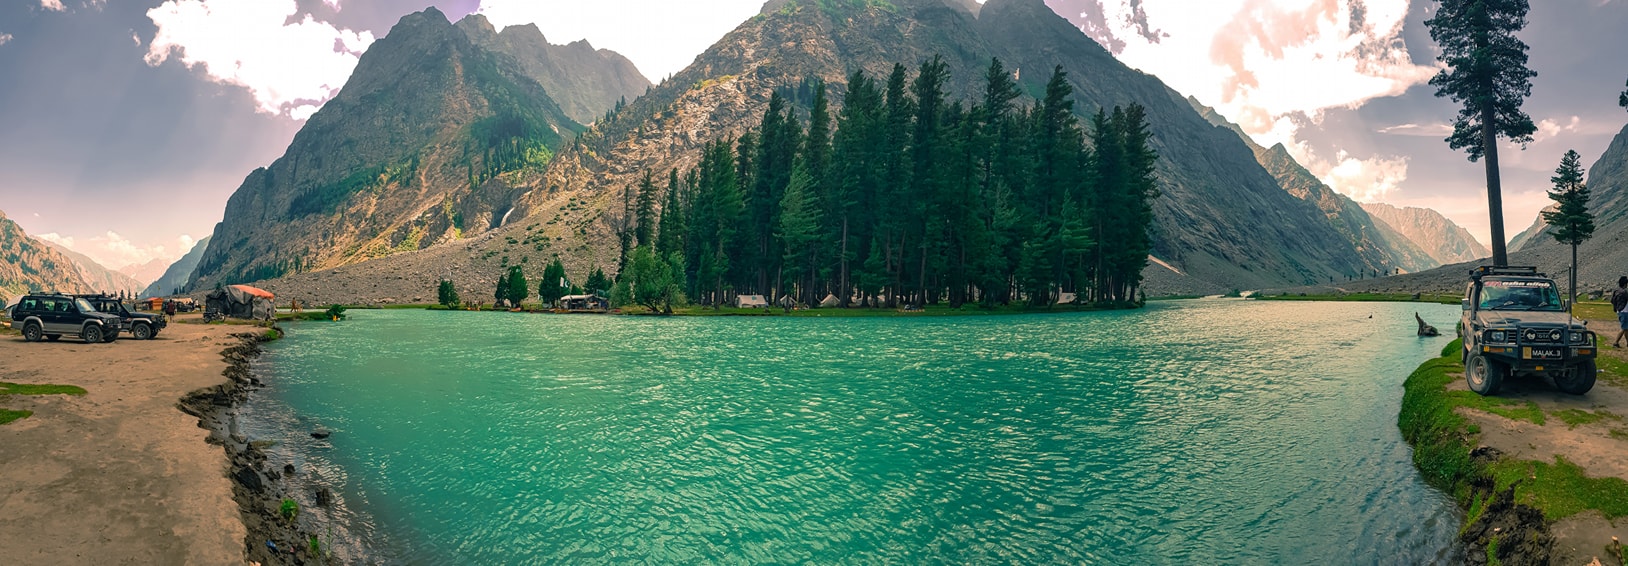 saifullah-lake-swat